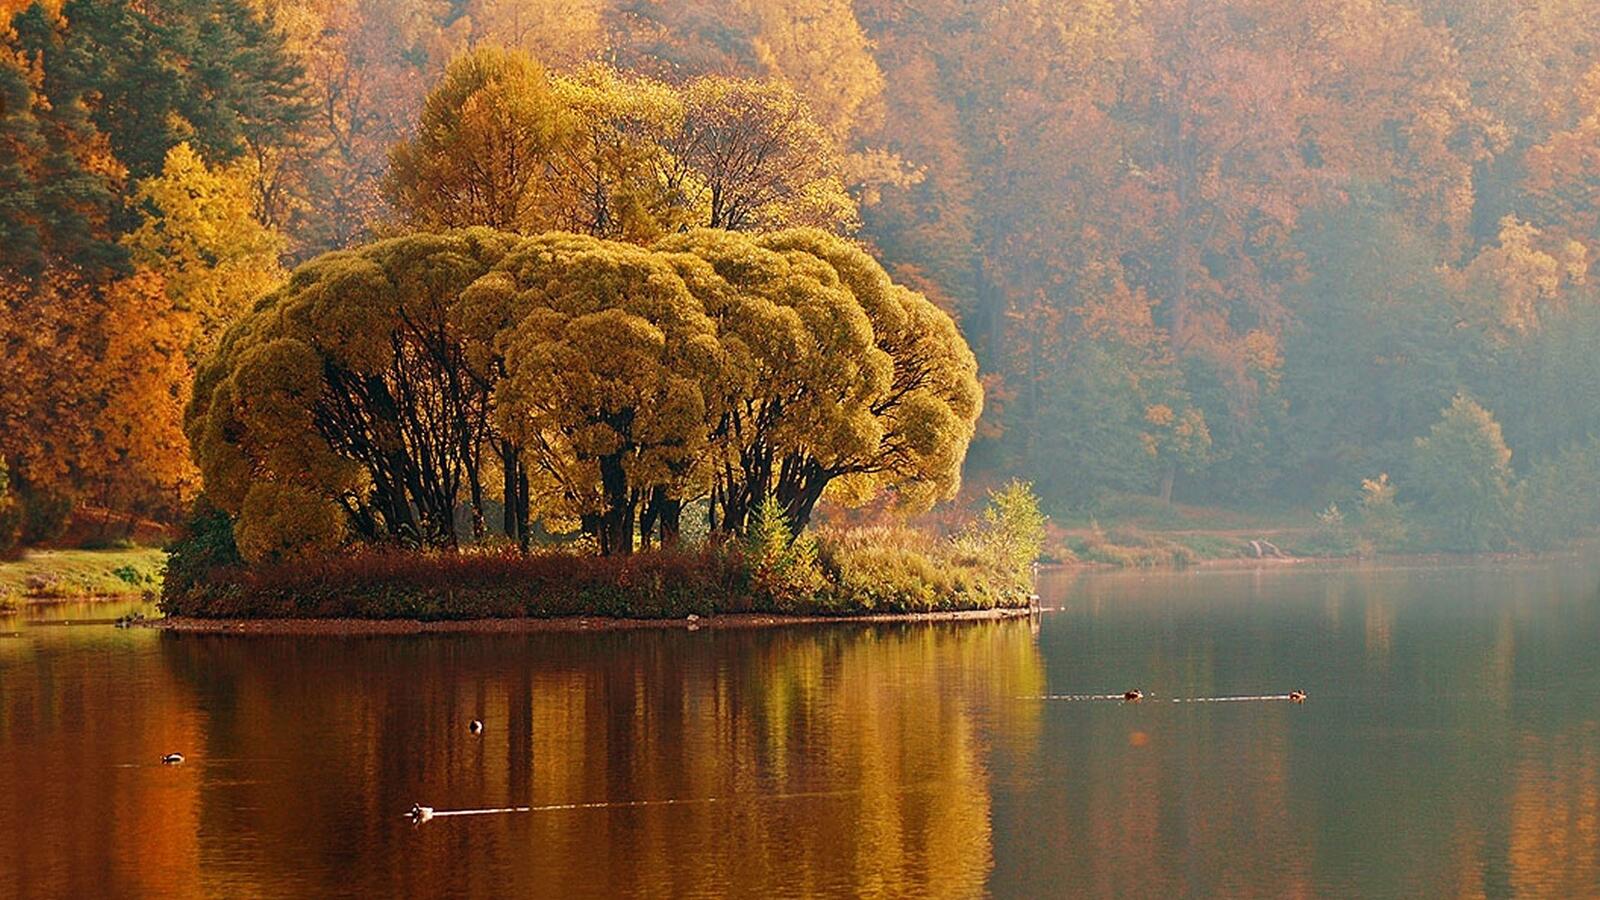 Бесплатное фото Остров с деревьями с желтыми кронами